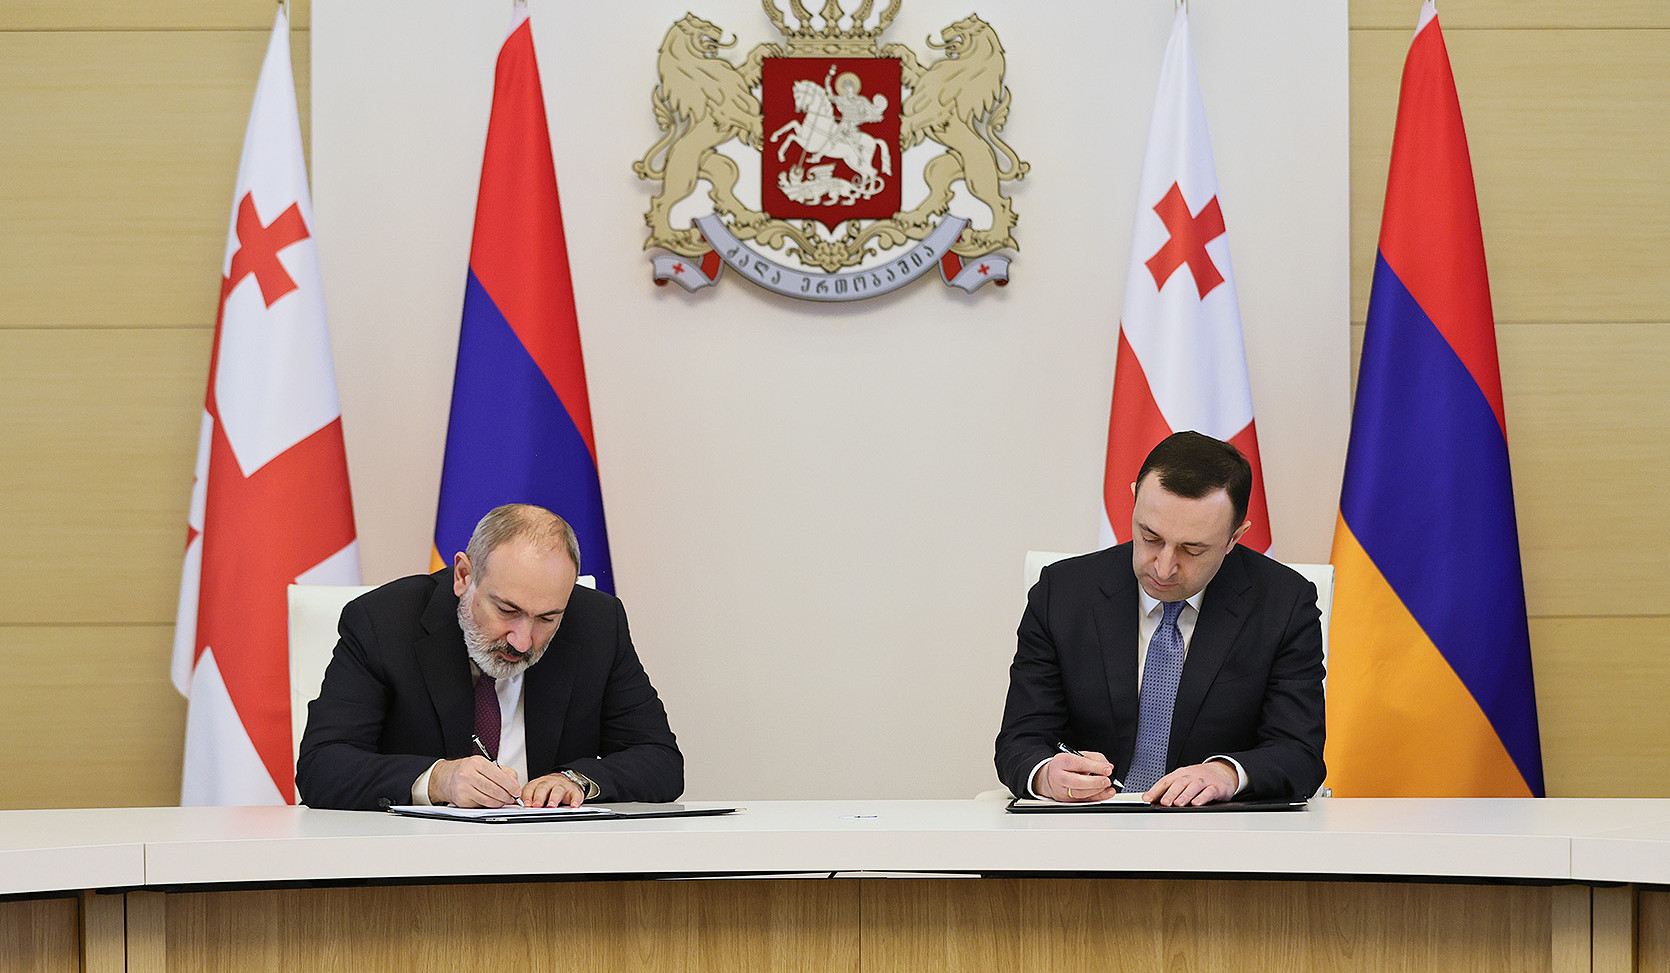 Пашинян и Гарибашвили подписали декларацию об установлении стратегического партнерства между Арменией и Грузией